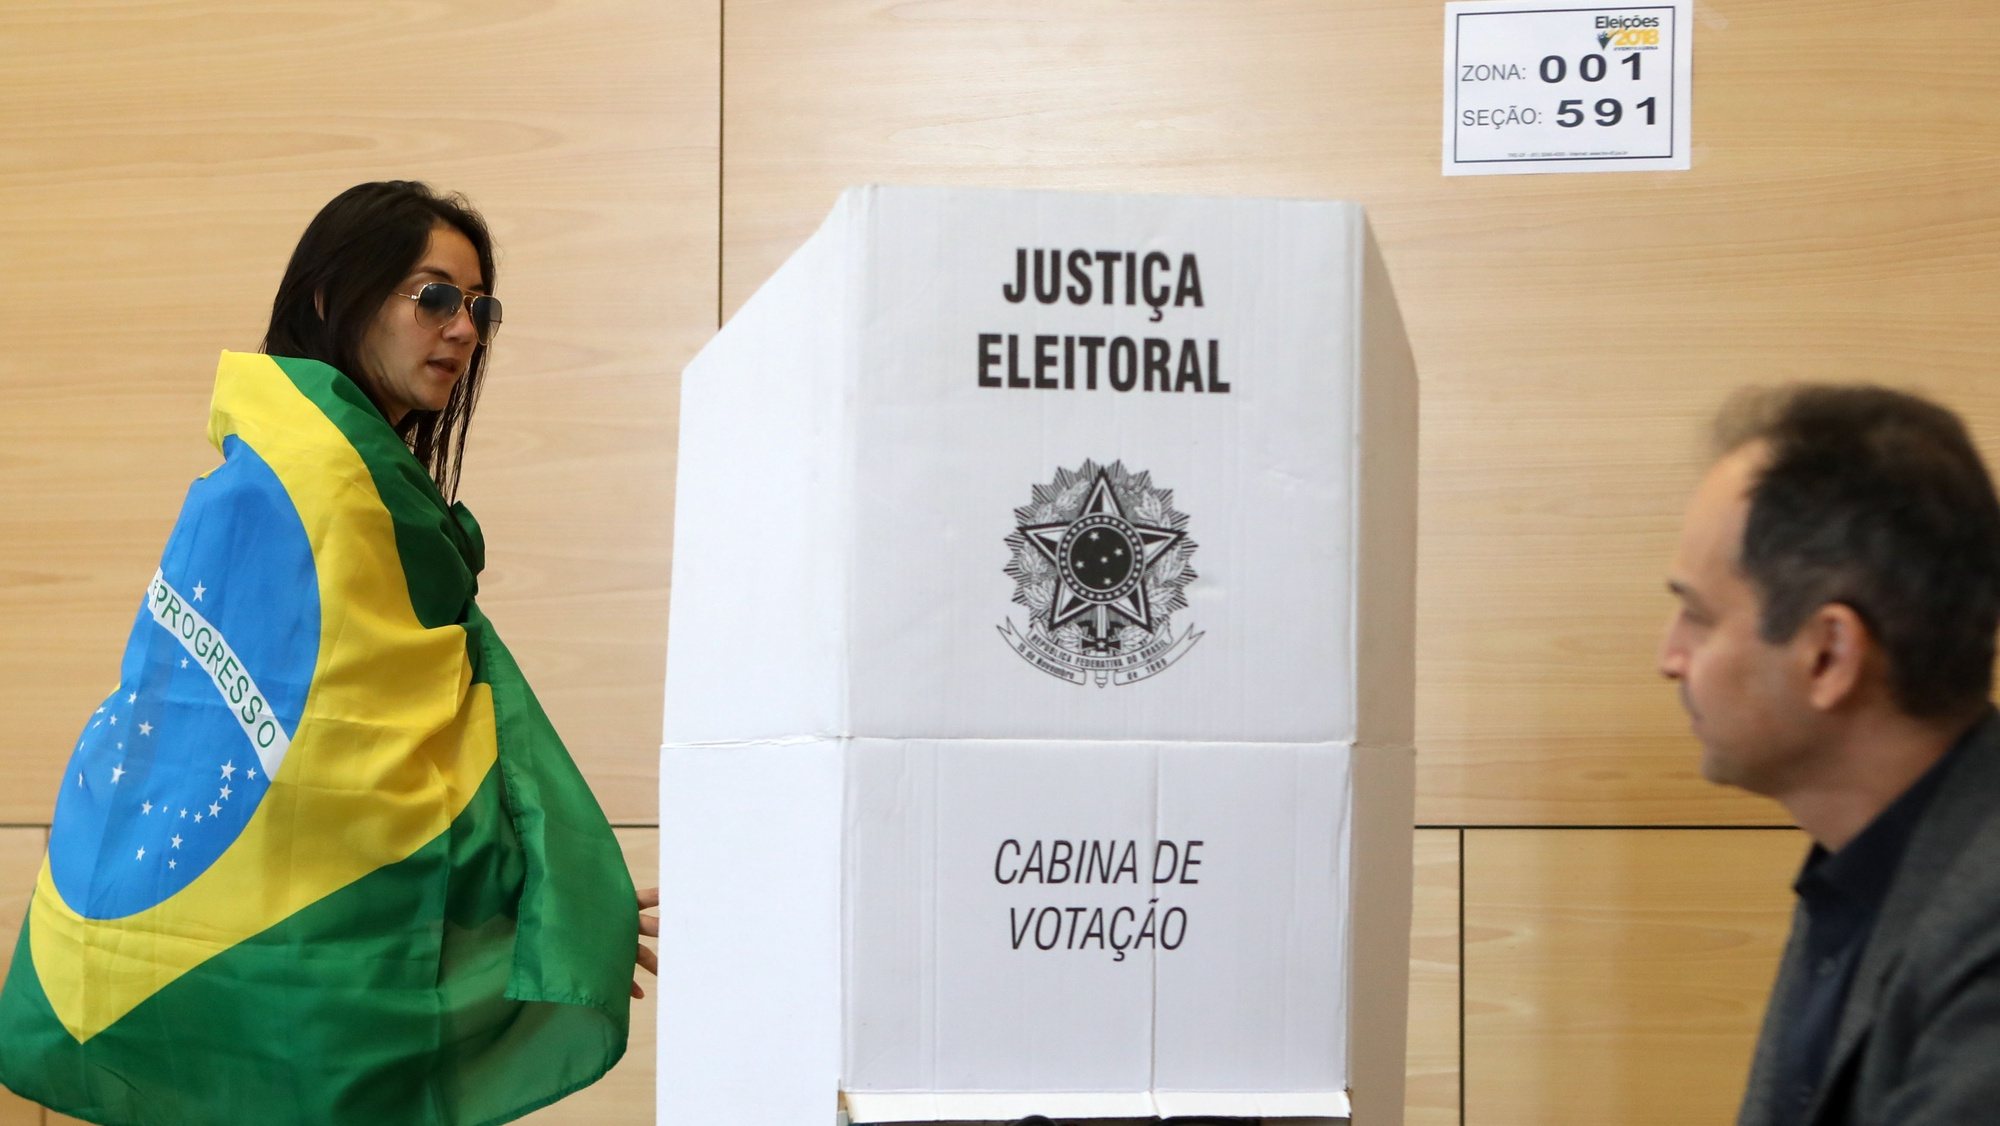 Cidadãos brasileiros votam para a segunda volta das eleições do Brasil, na Faculdade de Direito, 28 outubro 2018, em Lisboa. Cerca de 40 mil brasileiros (39.118) residentes em Portugal podem votar na segunda volta das eleições presidenciais do seu país, segundo dados do consulado do Brasil em Lisboa.  MANUEL DE ALMEIDA / LUSA